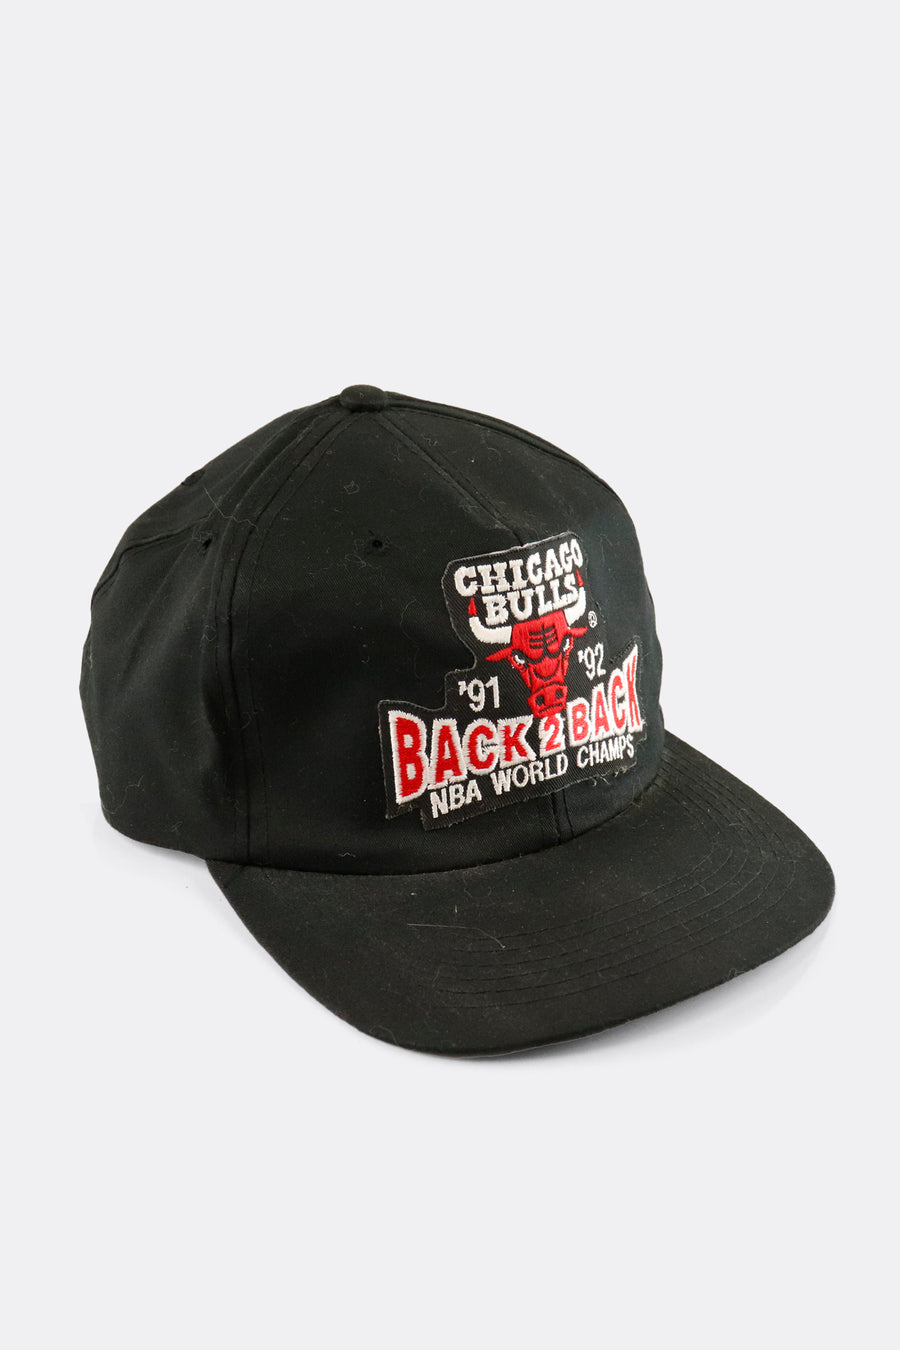 Vintage 1992 NBA Chicago Bulls Starter Back 2 Back World Champs Snapback Hat